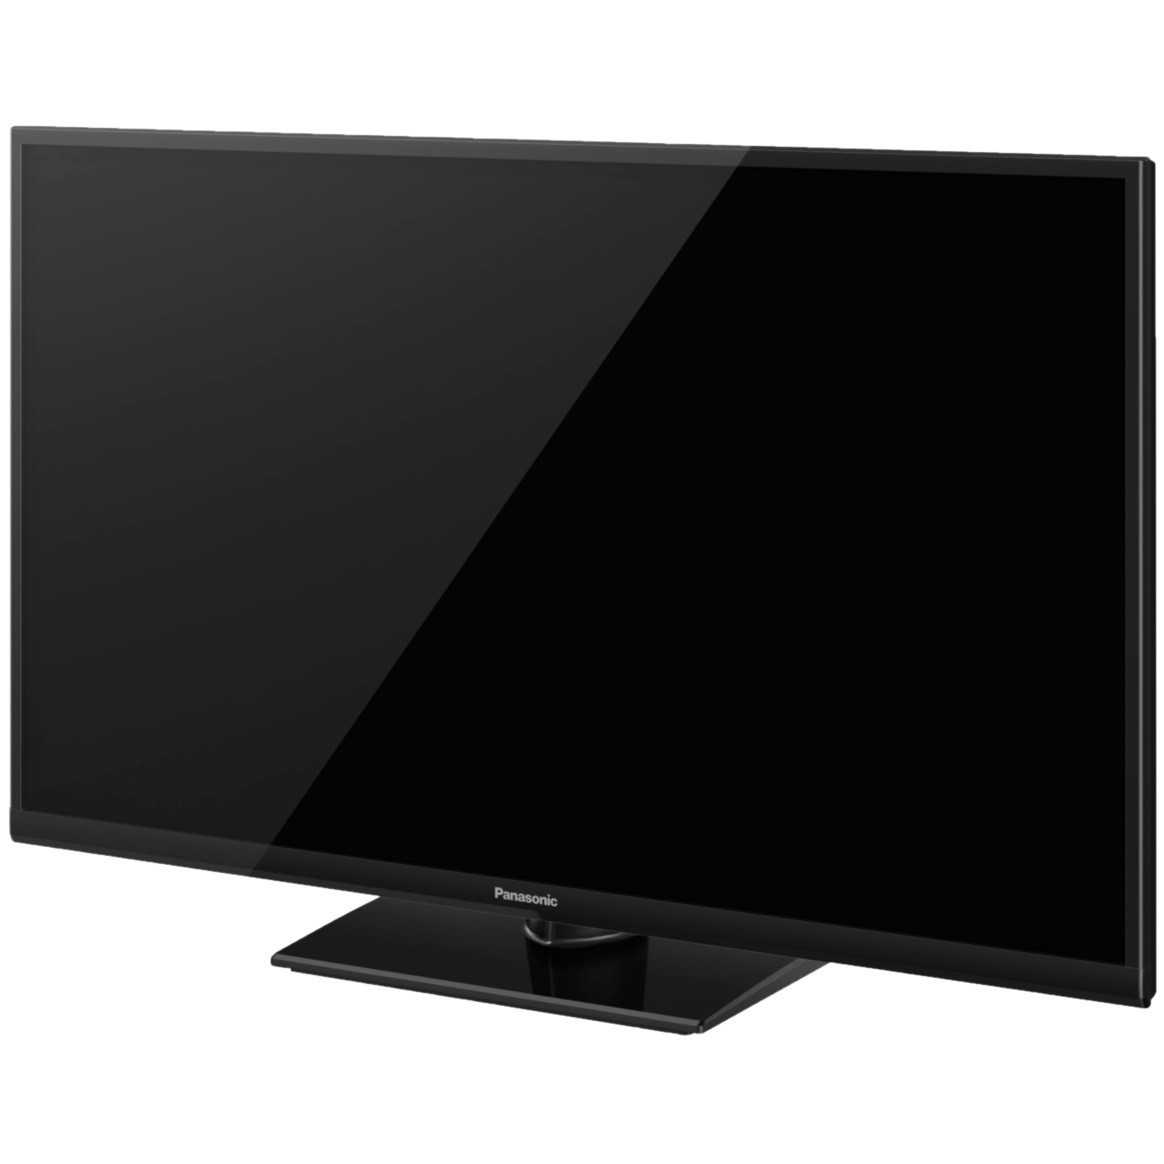 Плазменный телевизор  panasonic (панасоник) tx-pr42st50 купить в москве